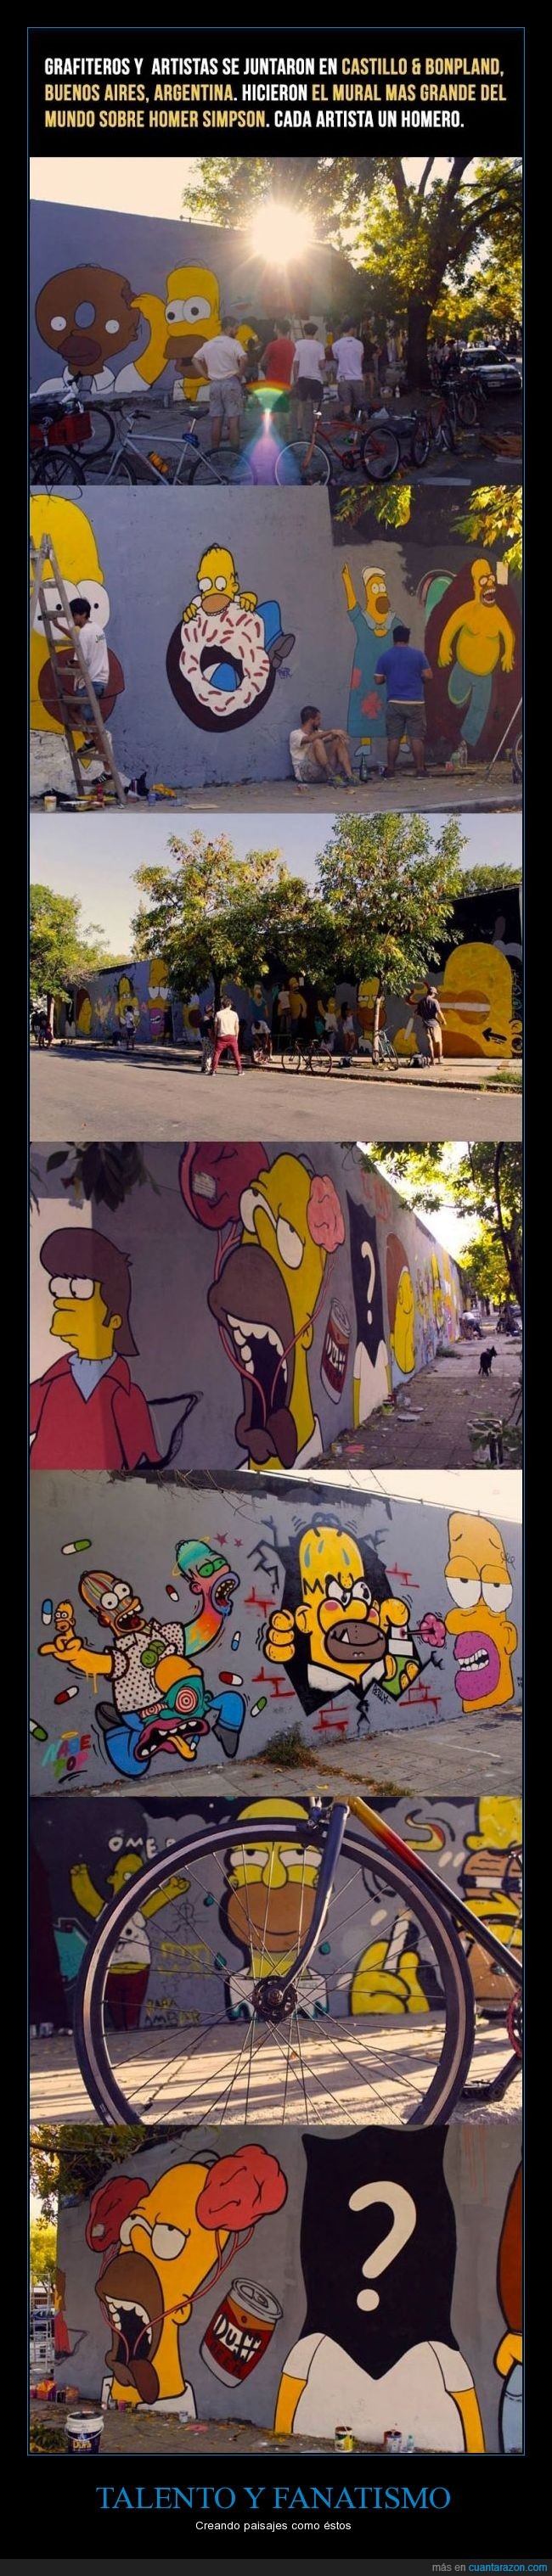 homer simpson,homer,the simpson,mural,mural mas grande,pintar,graffiti,artistas,pintura,jorobate flanders,Argentina